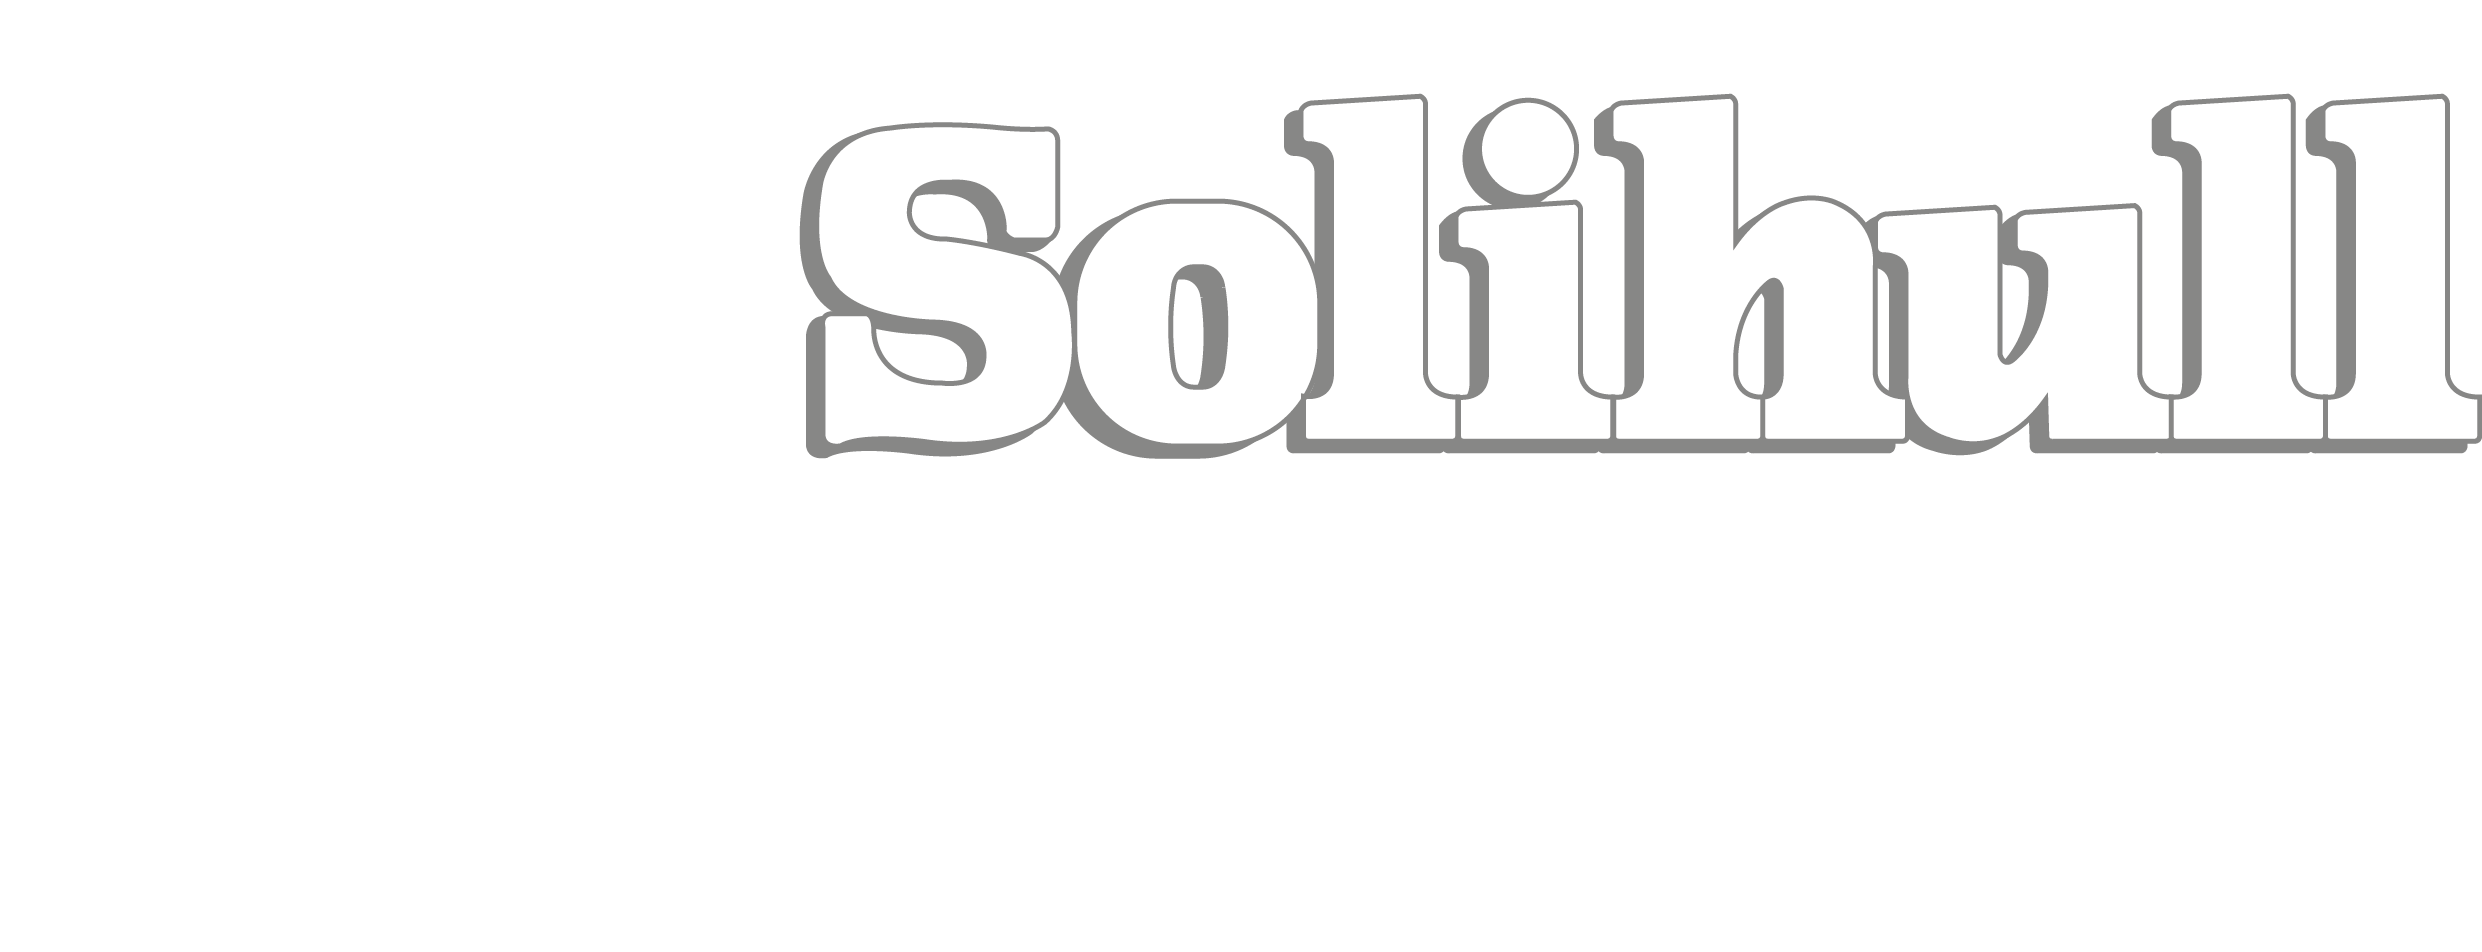 Solihull Logo